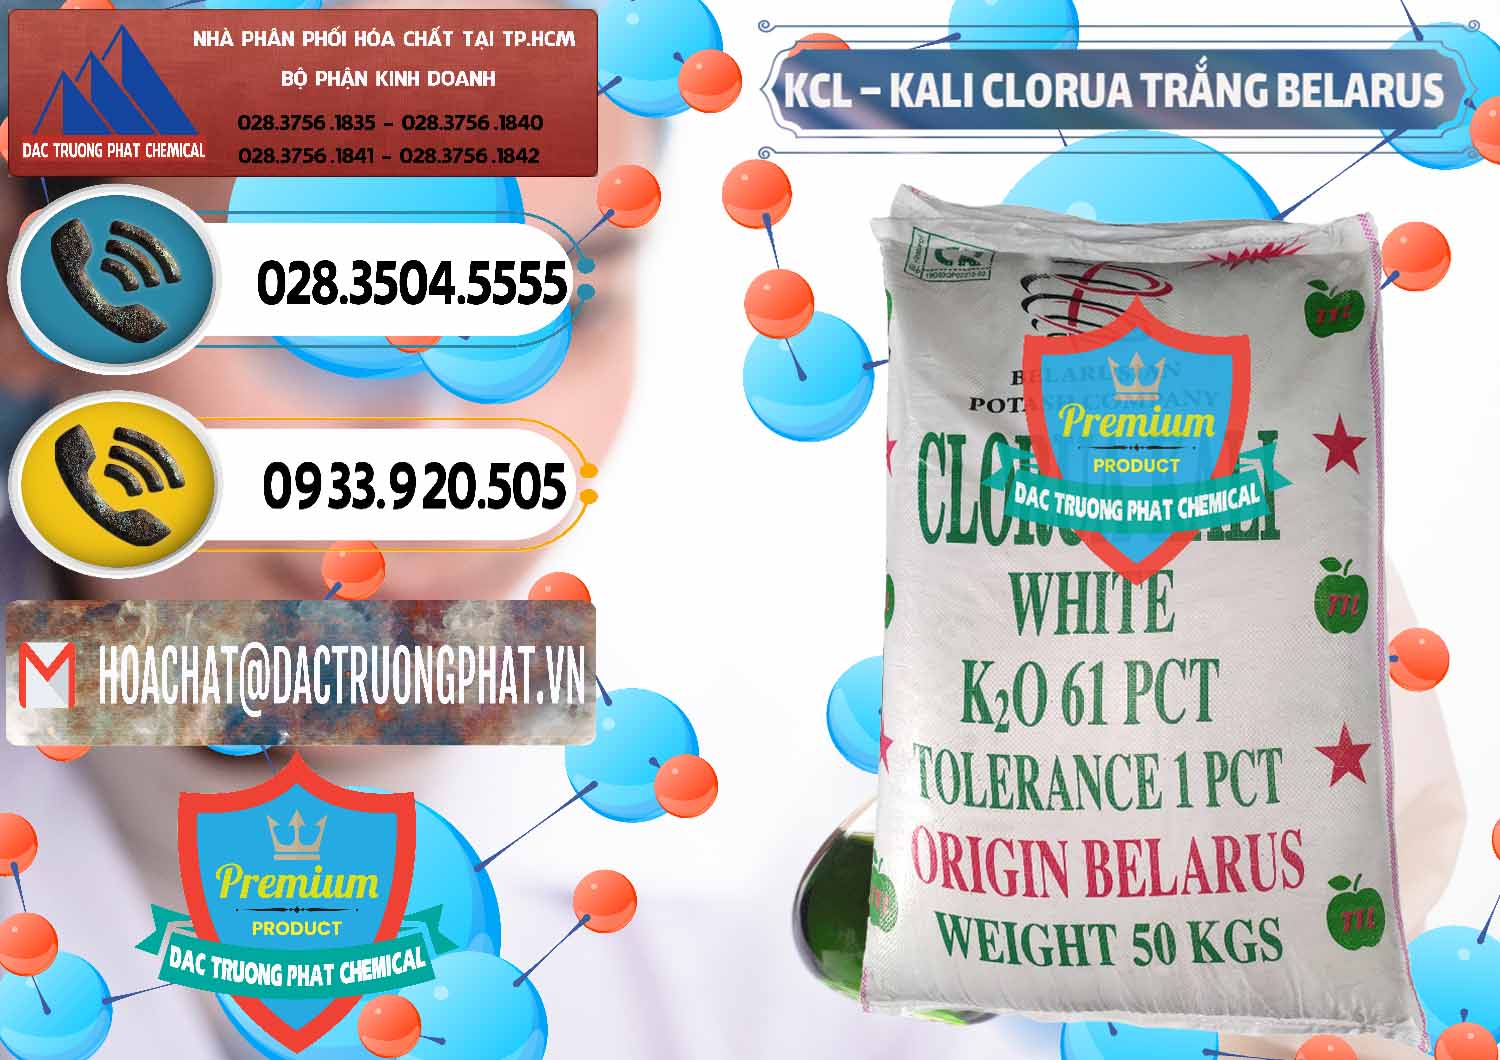 Cty phân phối ( bán ) KCL – Kali Clorua Trắng Belarus - 0085 - Cty phân phối - kinh doanh hóa chất tại TP.HCM - hoachatdetnhuom.vn